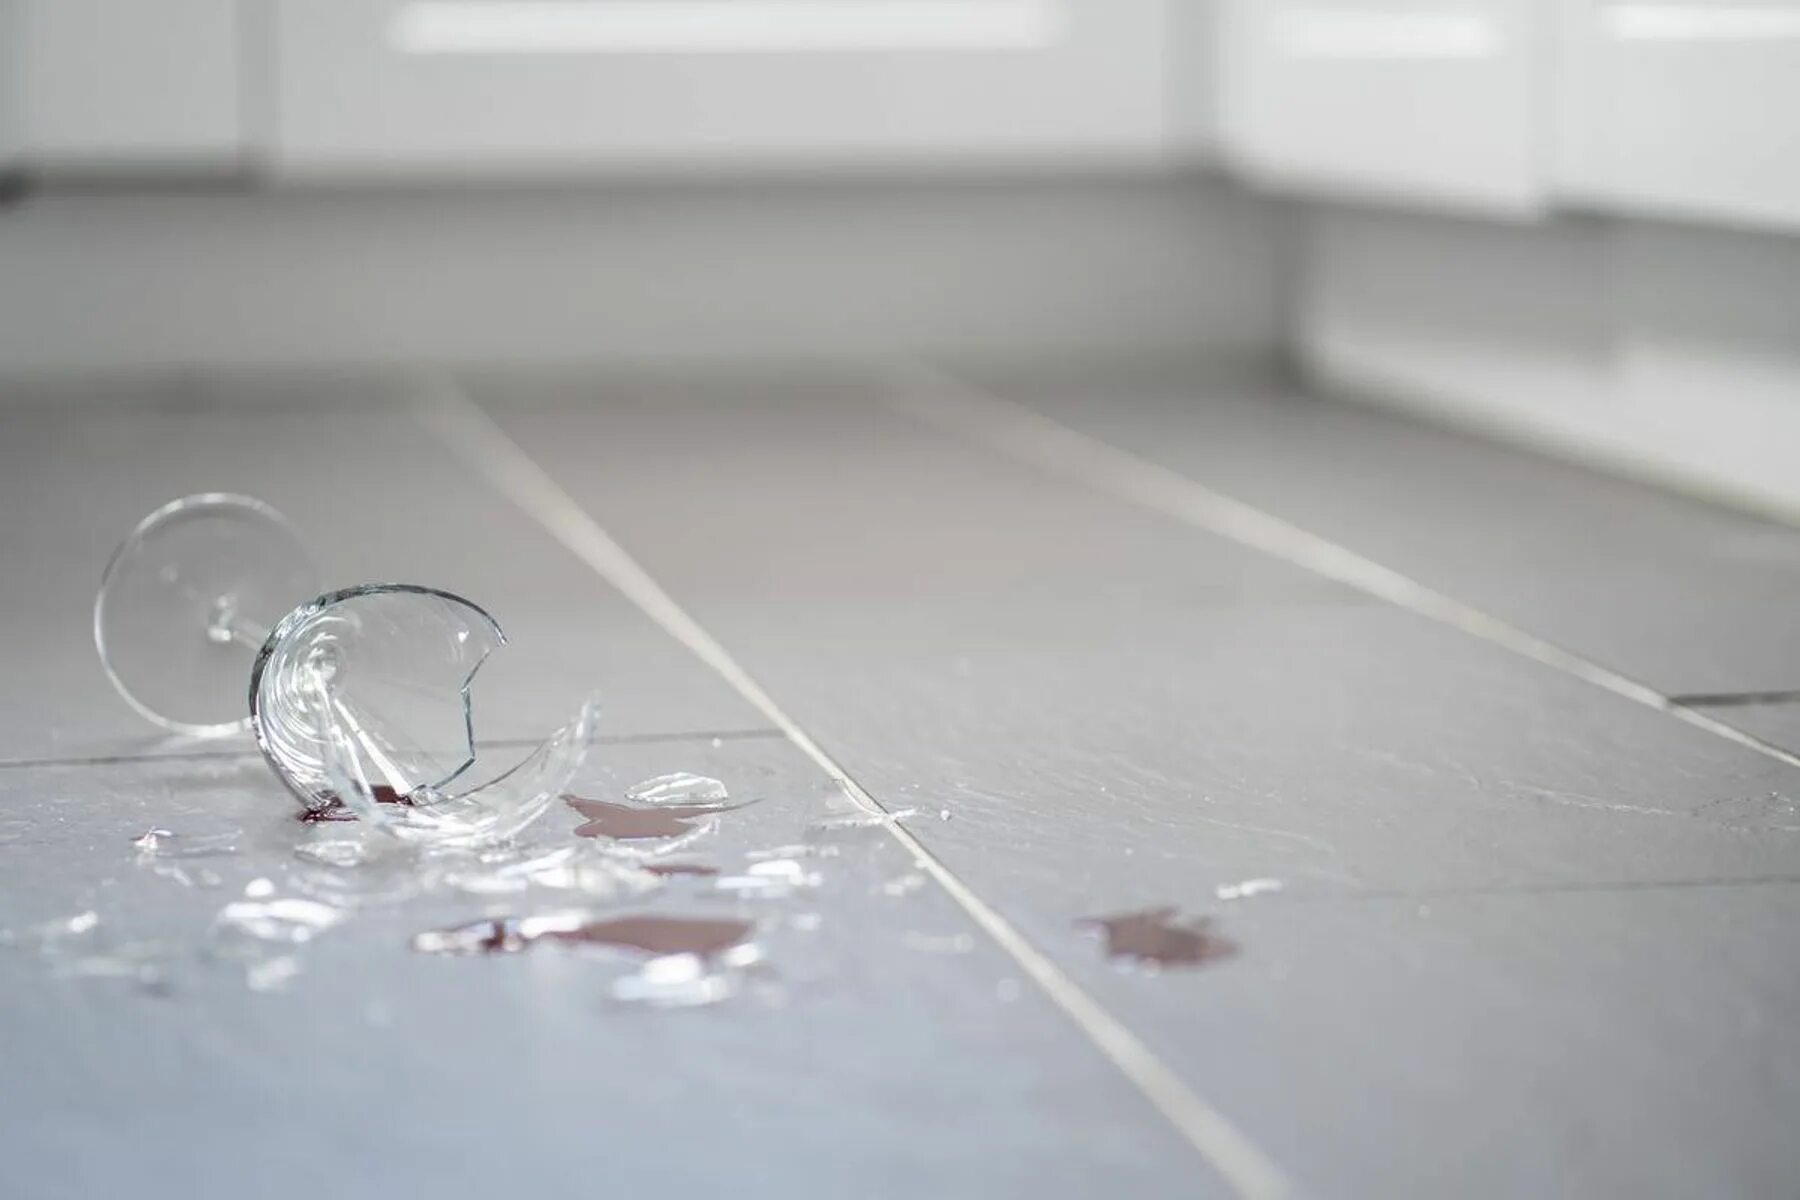 Broken on the floor. Разбитая посуда. Разбитая посуда на полу. Стекло падает. Падение на стеклянный стол.